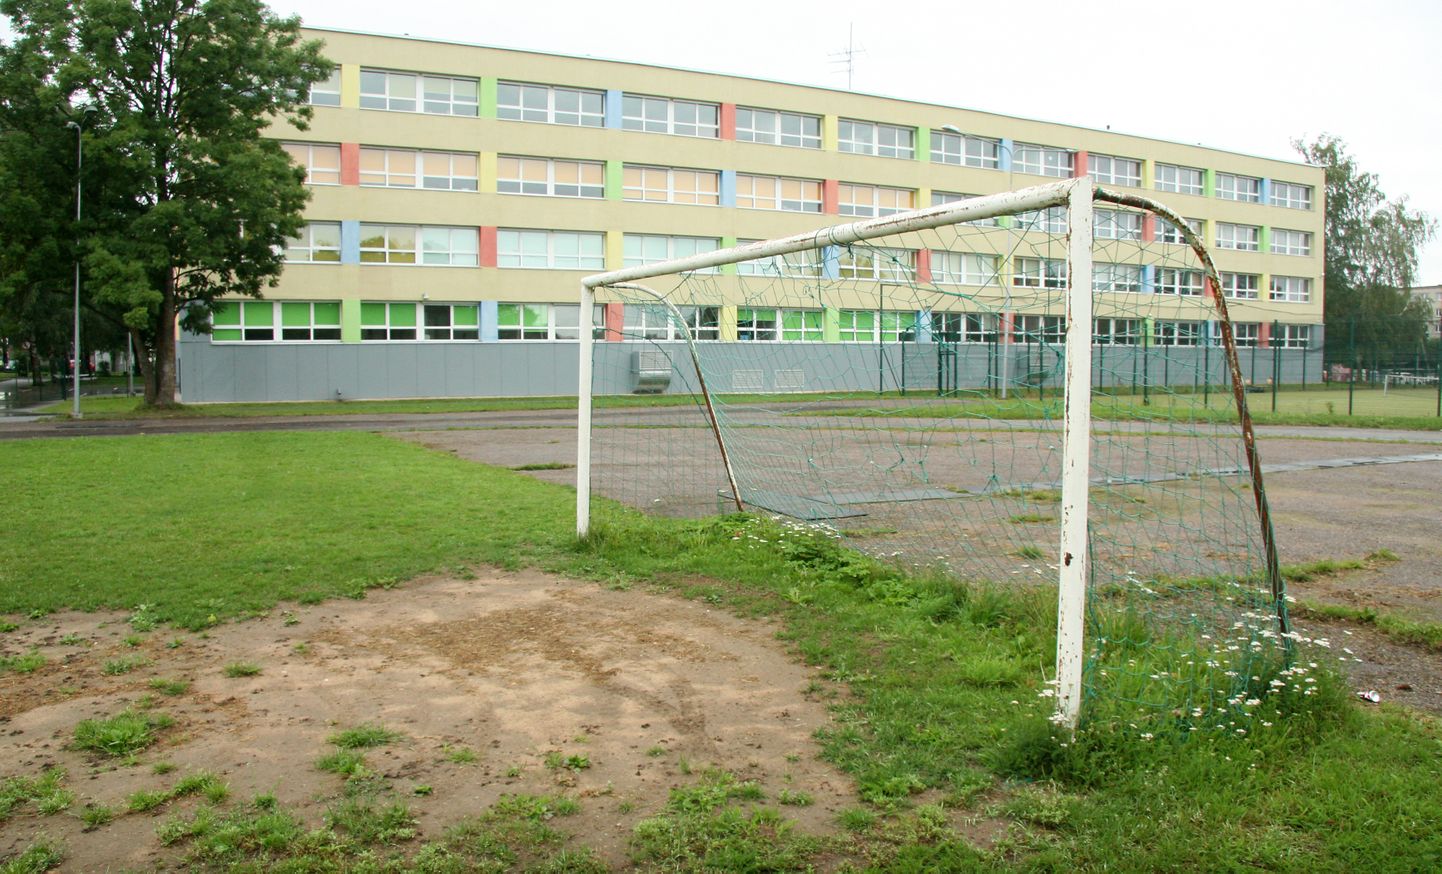 Не позднее весны следующего года стадион русской основной школы, расположенный между йыхвиским рынком и железной дорогой, должен обрести гораздо более современный вид.